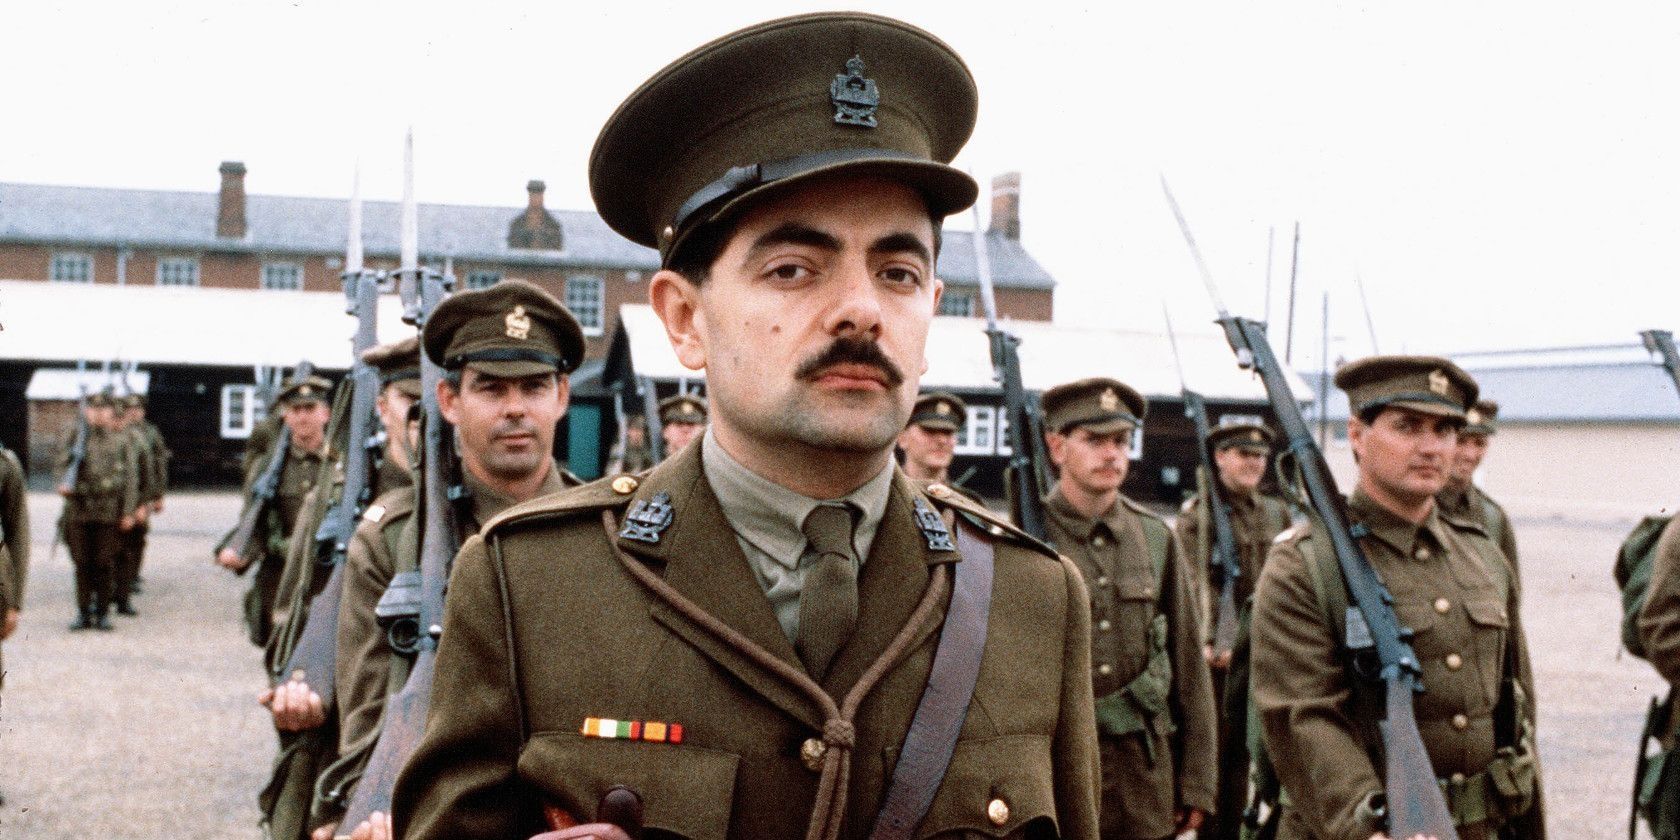 Rowan Atkinson as Blackadder in front of his troops in the final series of Blackadder